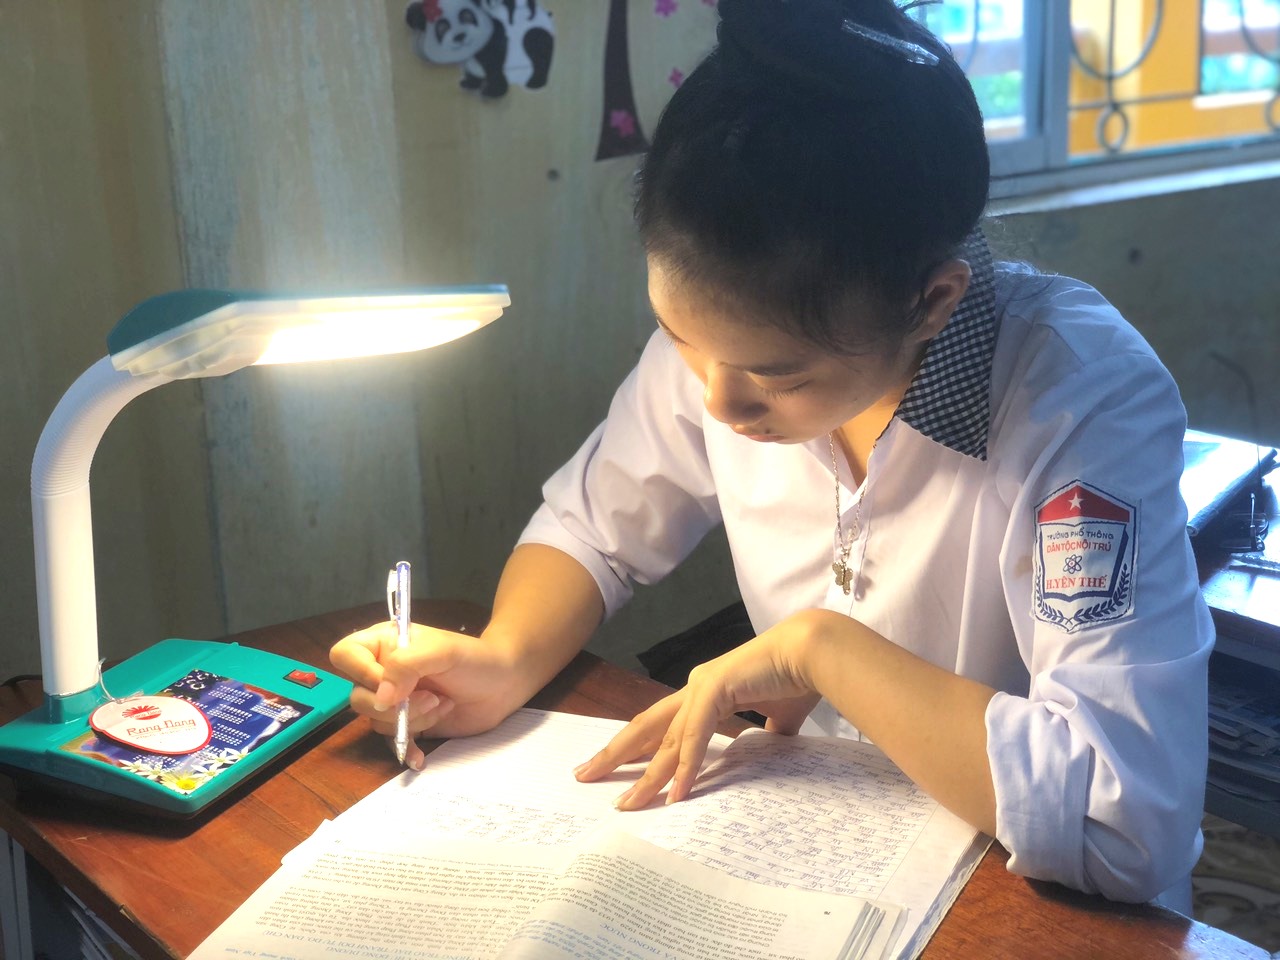 Rạng Đông tặng đèn bàn bảo vệ thị lực cho học sinh nghèo